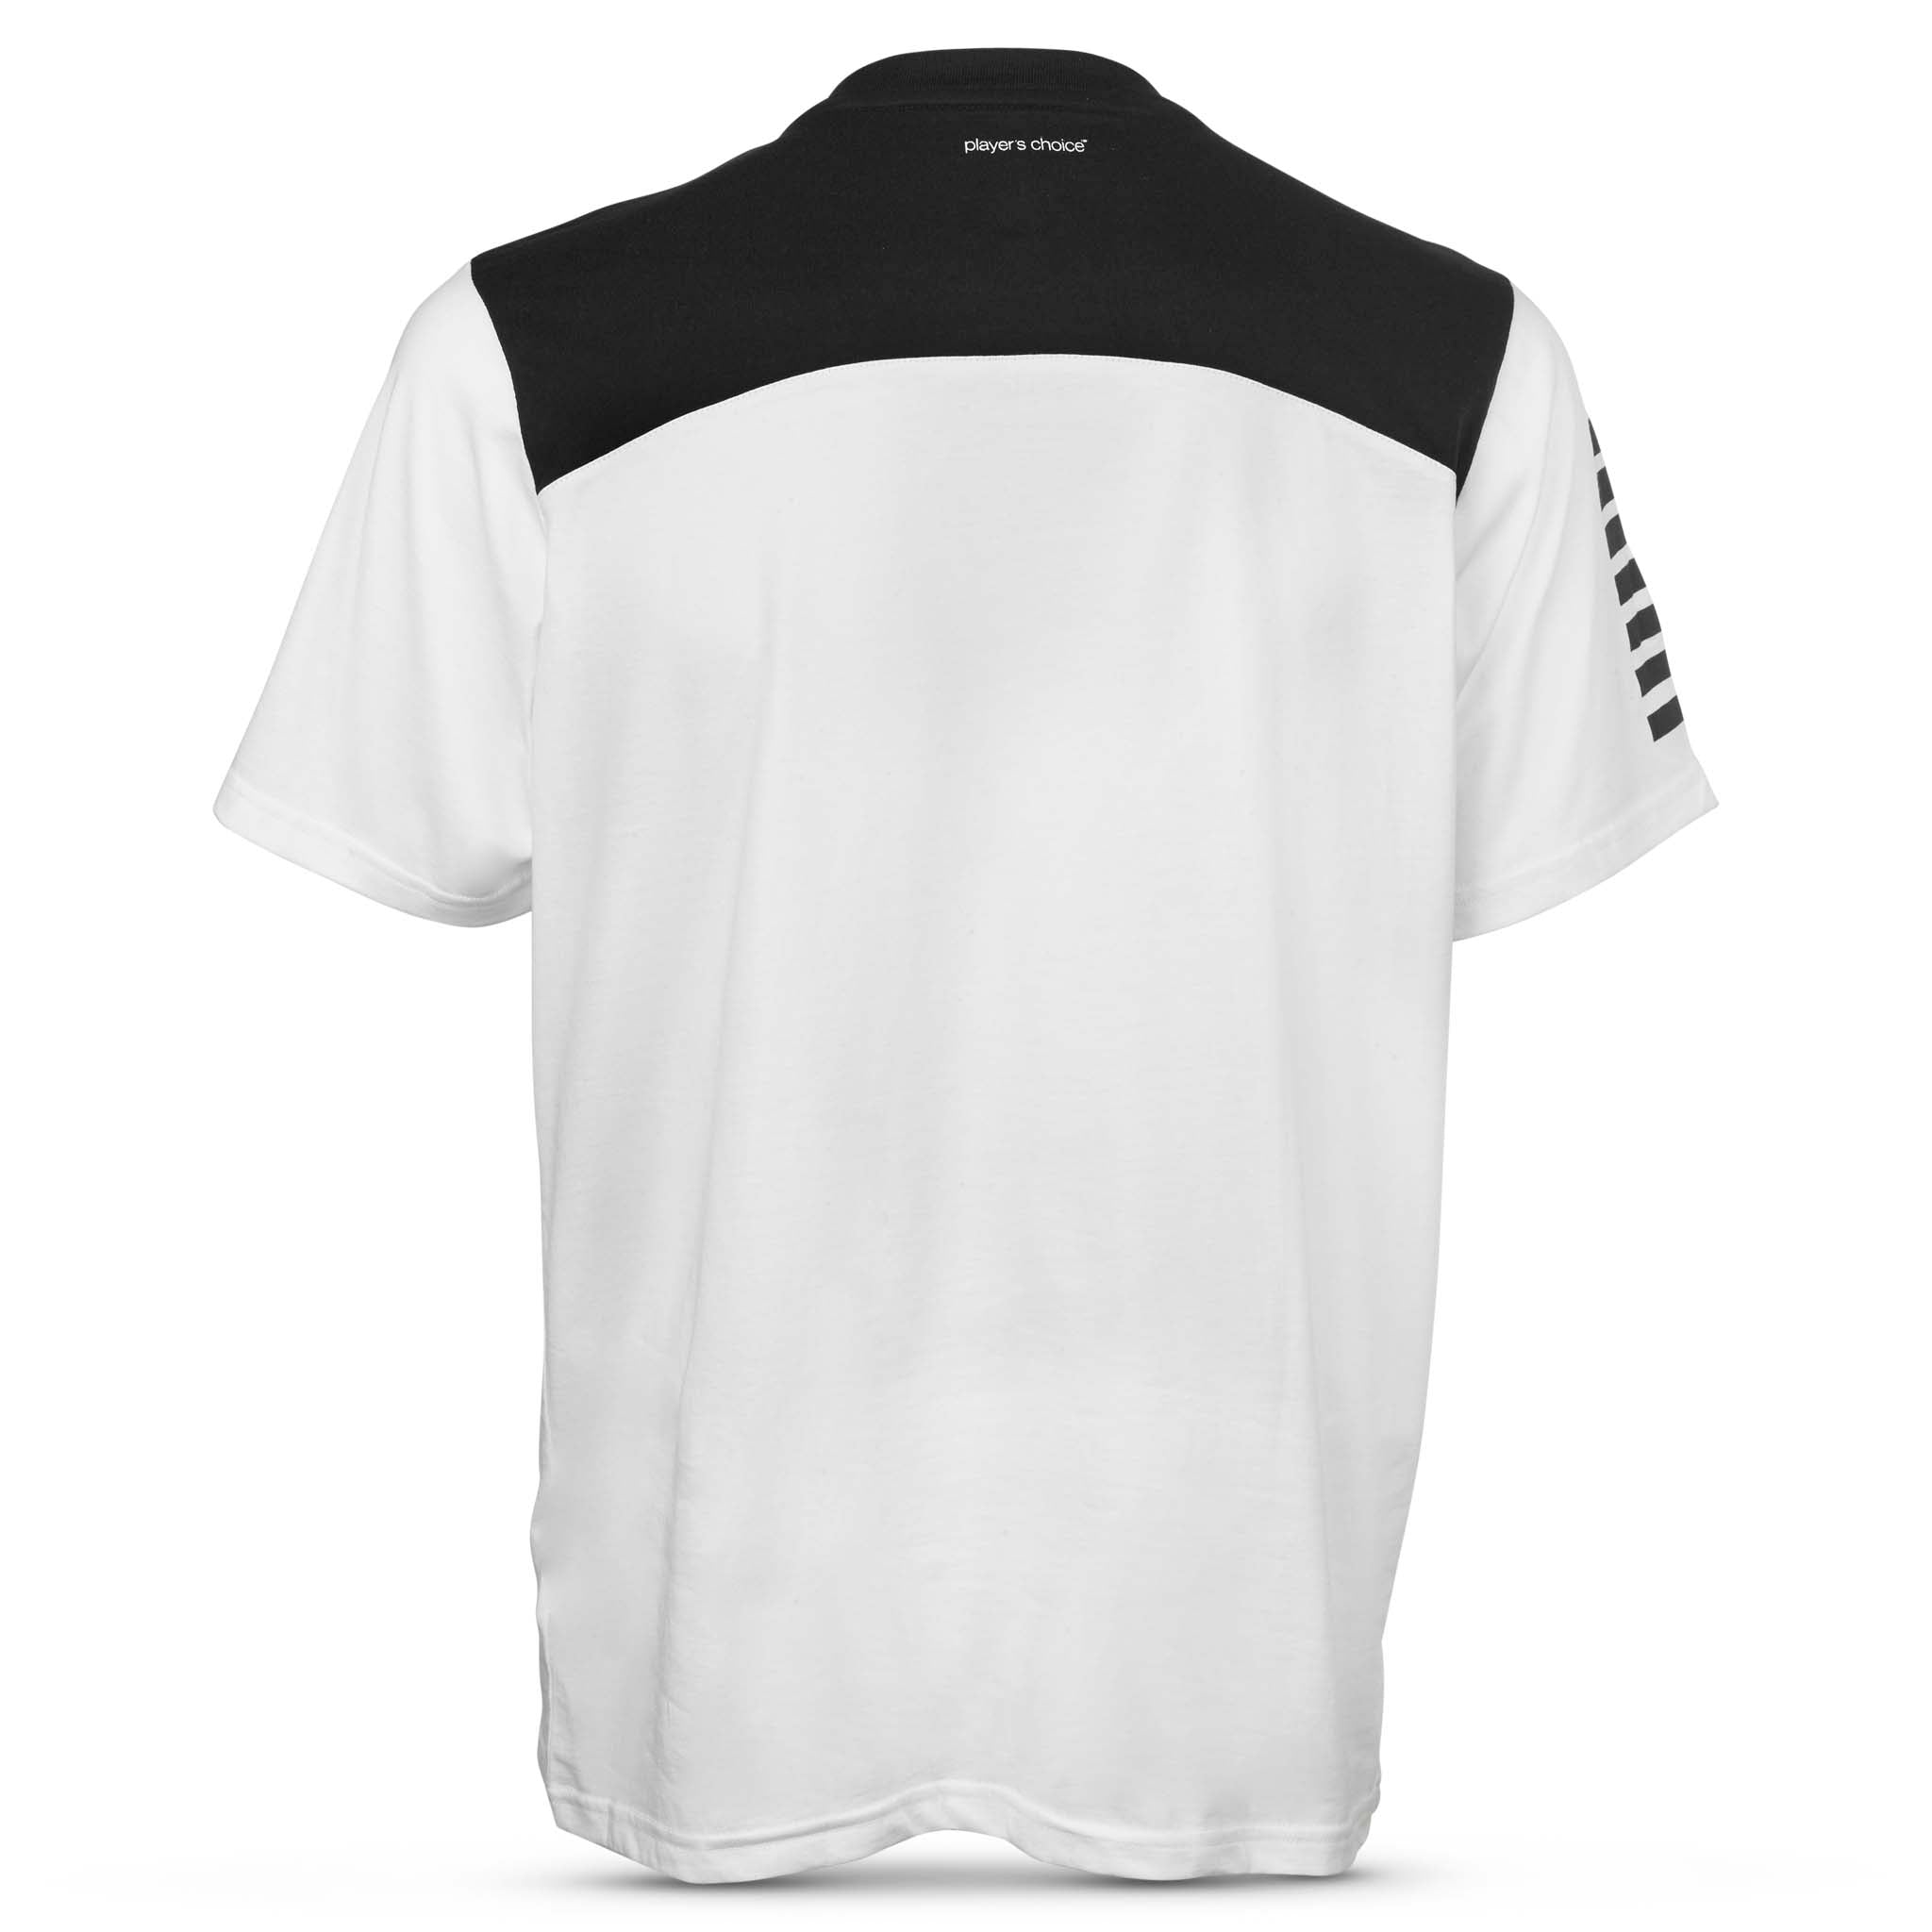 Oxford T-Shirt #farge_ #farge_hvit/svart #farge_hvit/svart